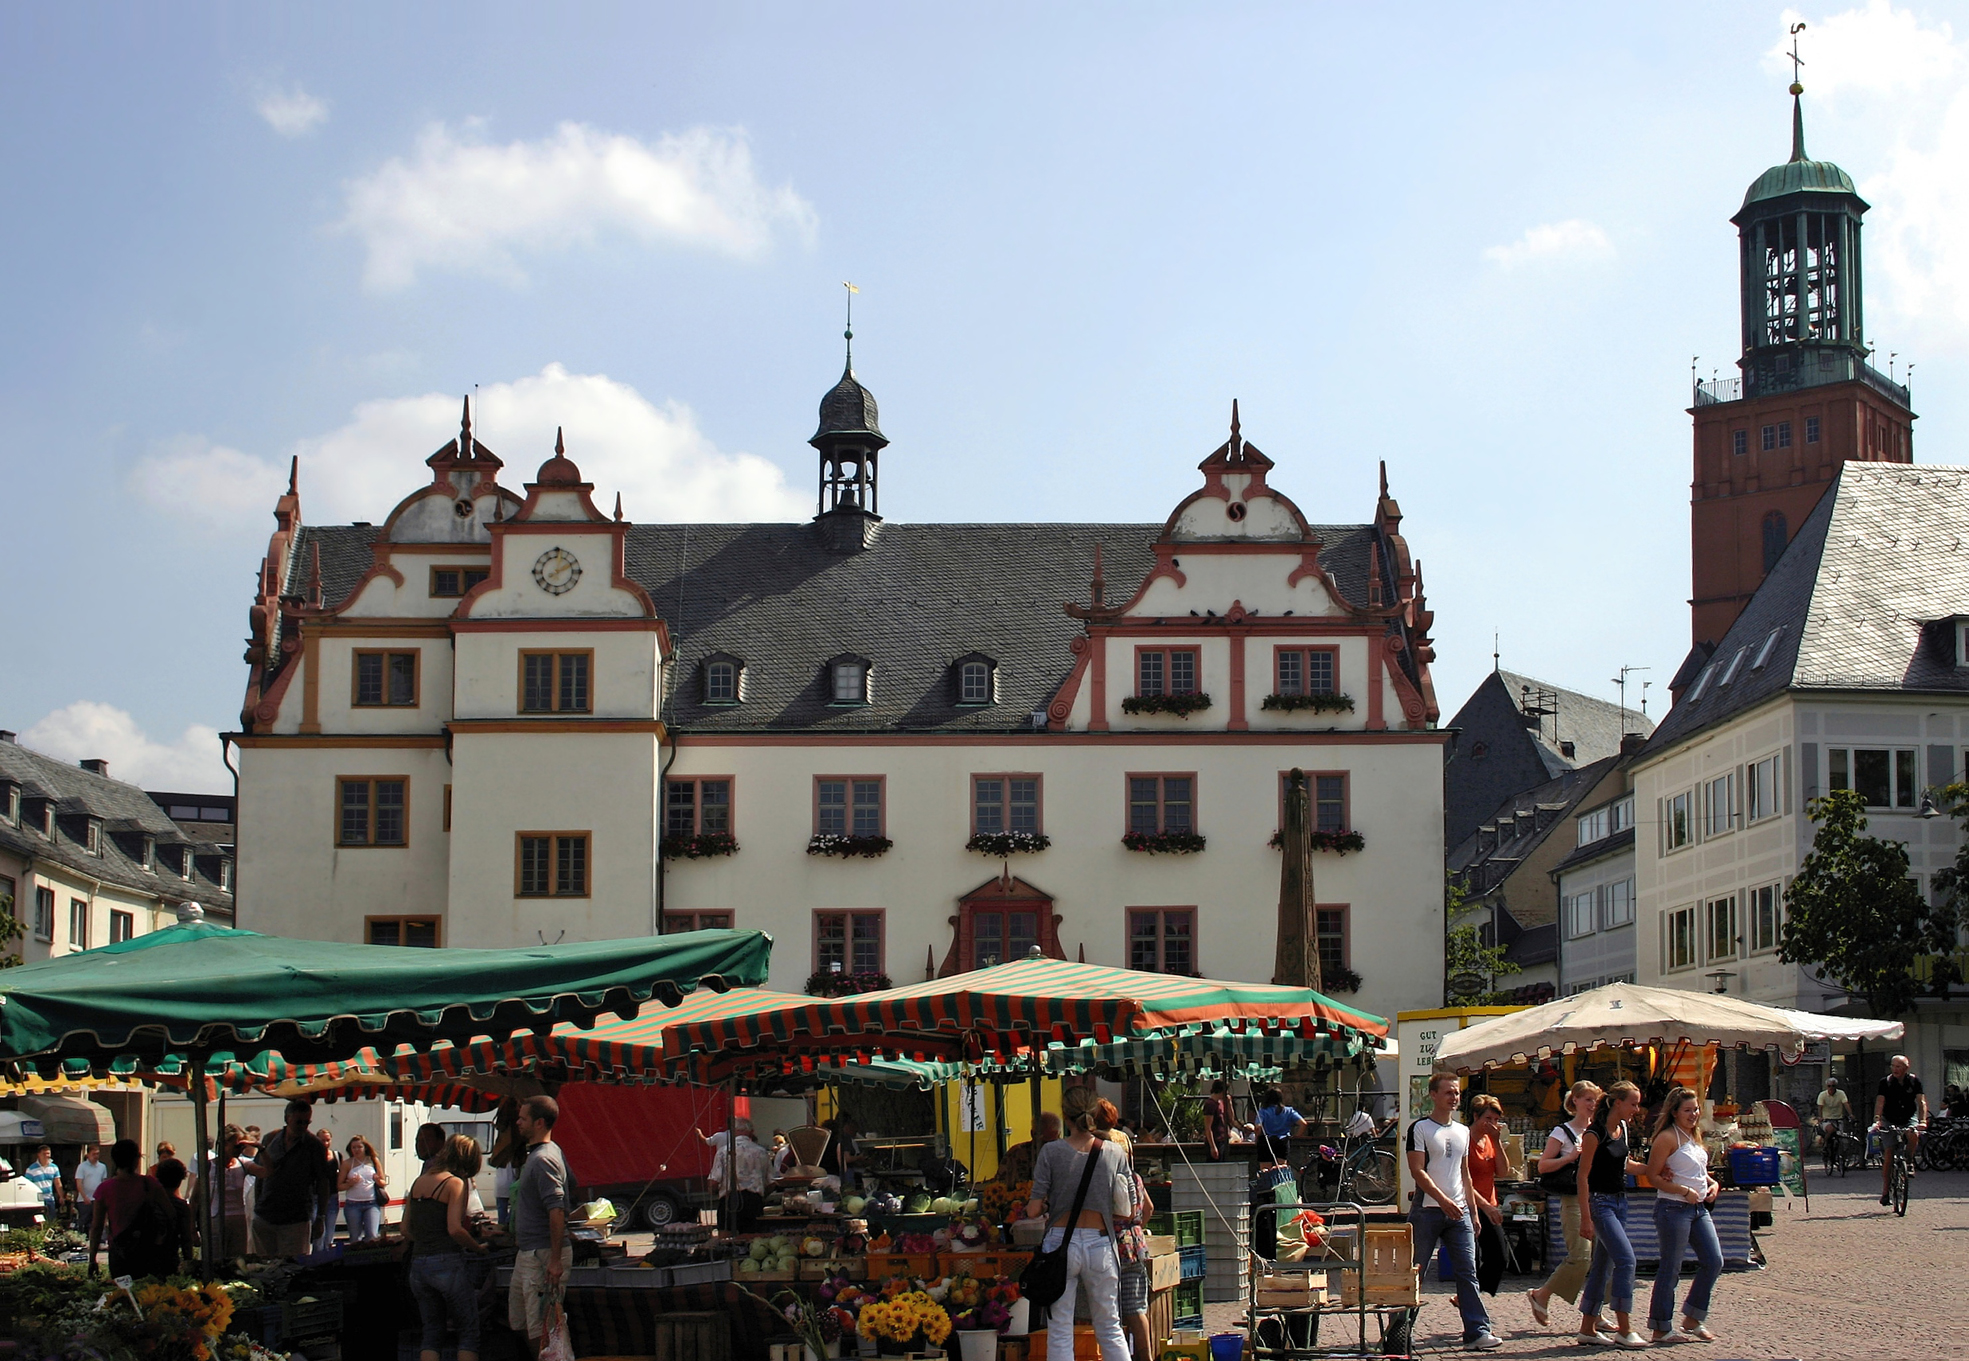 Altes Rathaus mit Wochenmarkt.
